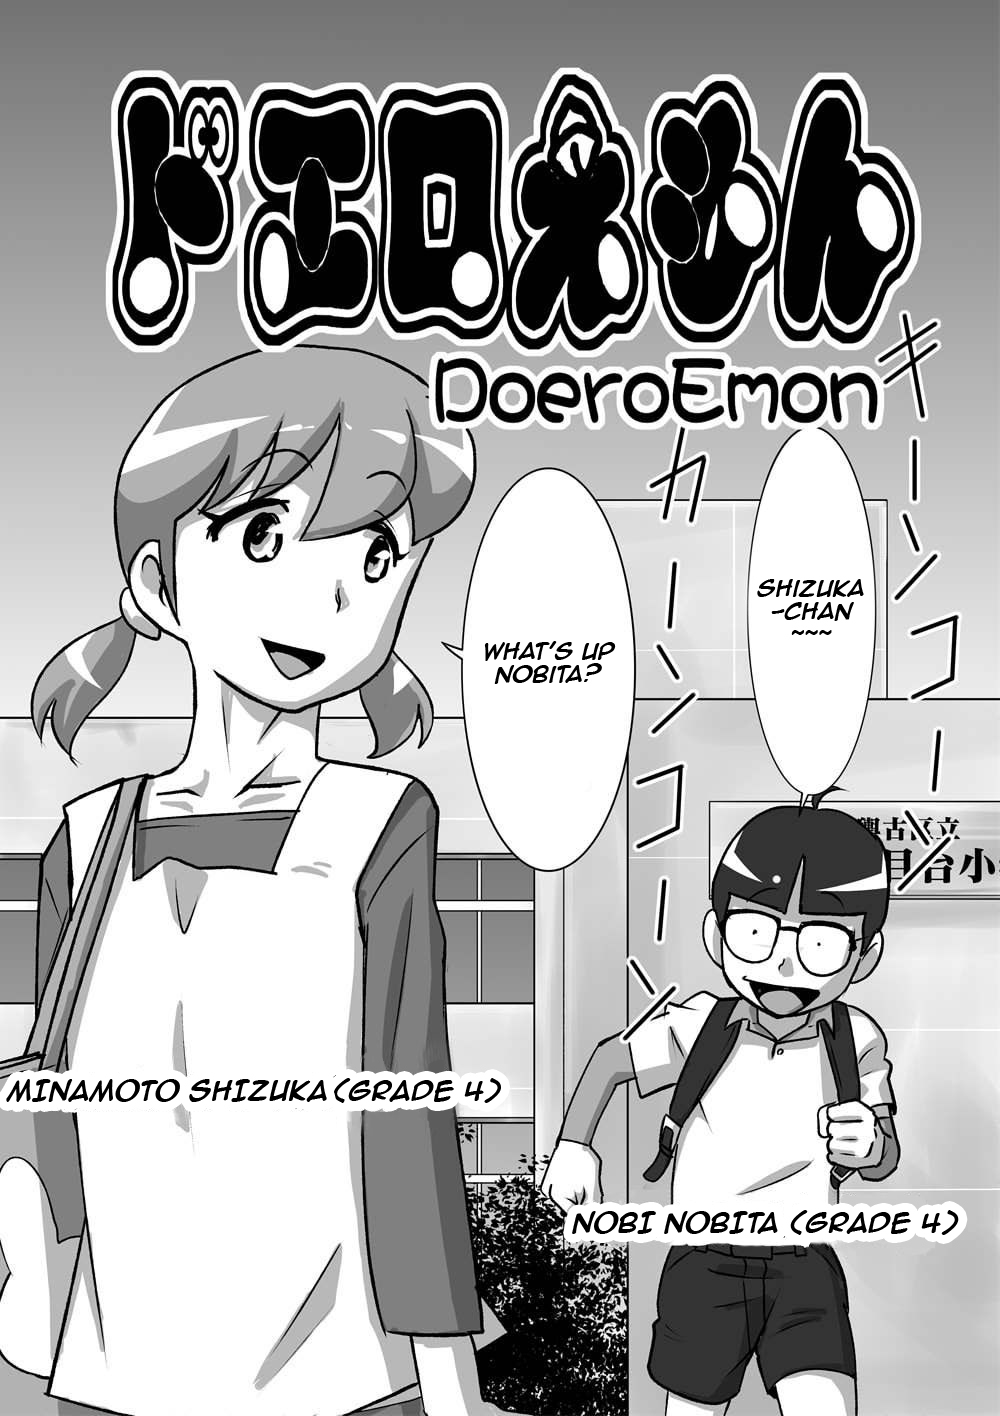 Porno nobita comic s Doremon Cartoon Porn Shizuka Hentai 37 Monsters Raped 13 Year Old Shizuka